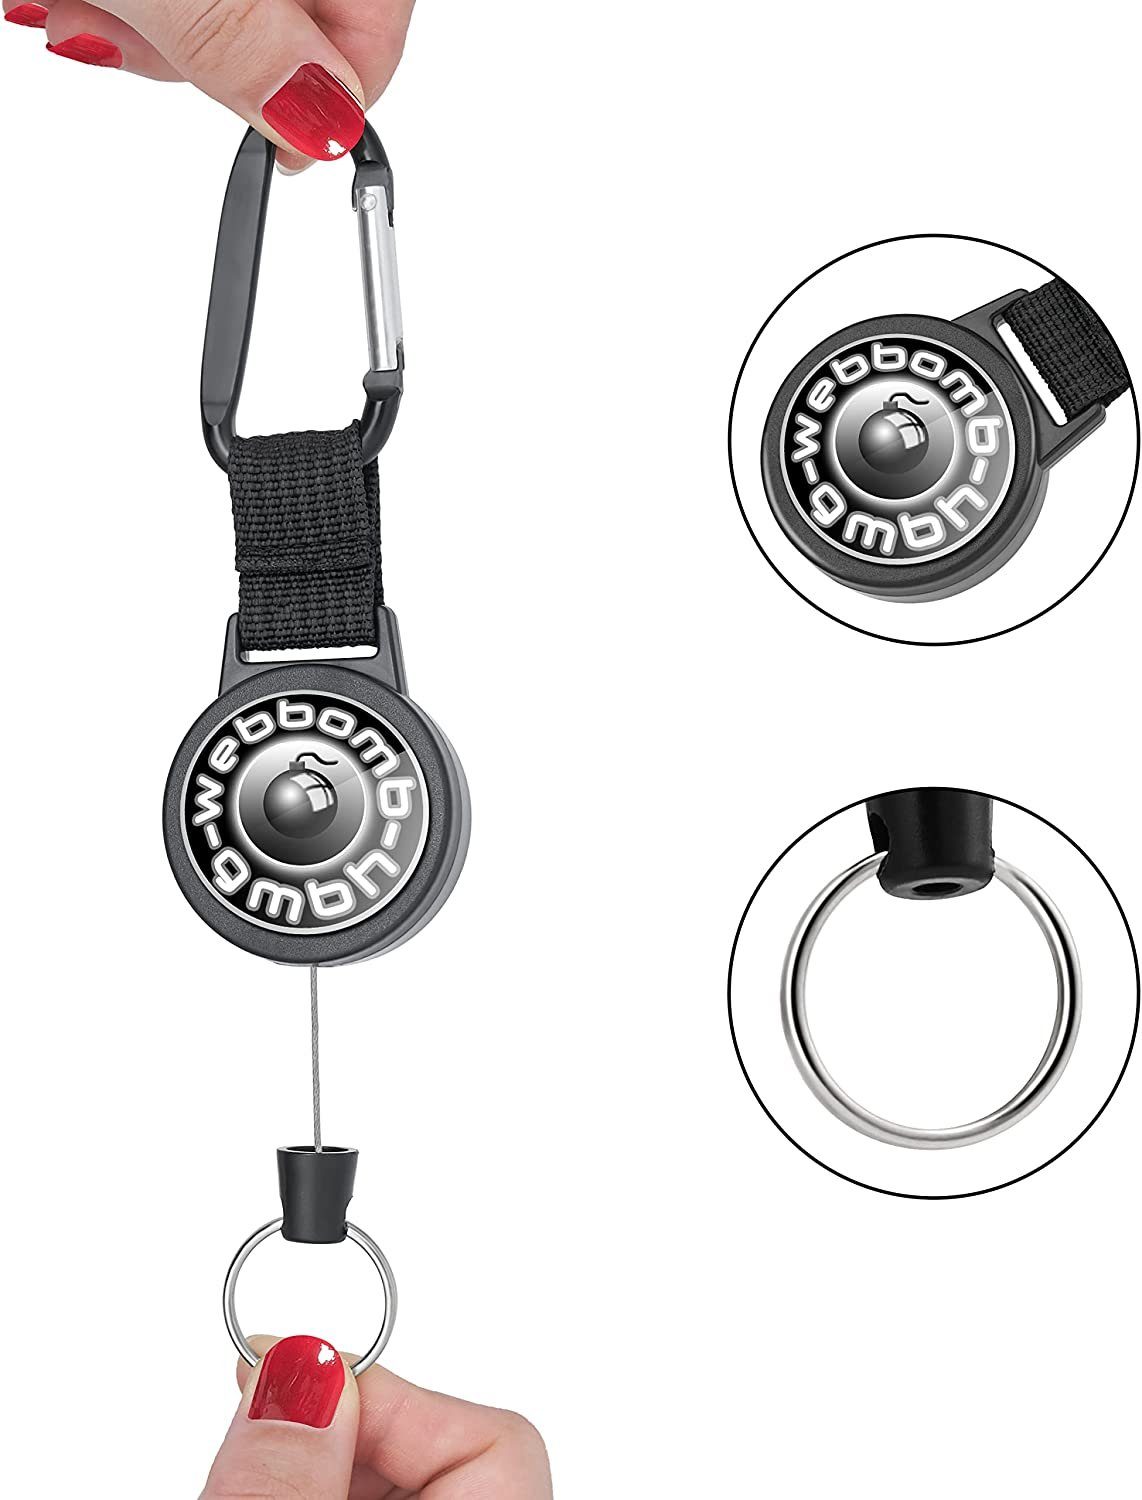 Schlüsselanhänger Ausweishalter Logo Schlüsselrolle WEBBOMB Kartenhalter Jojo 3x ausziehba mit mit Stahlseil schwarz